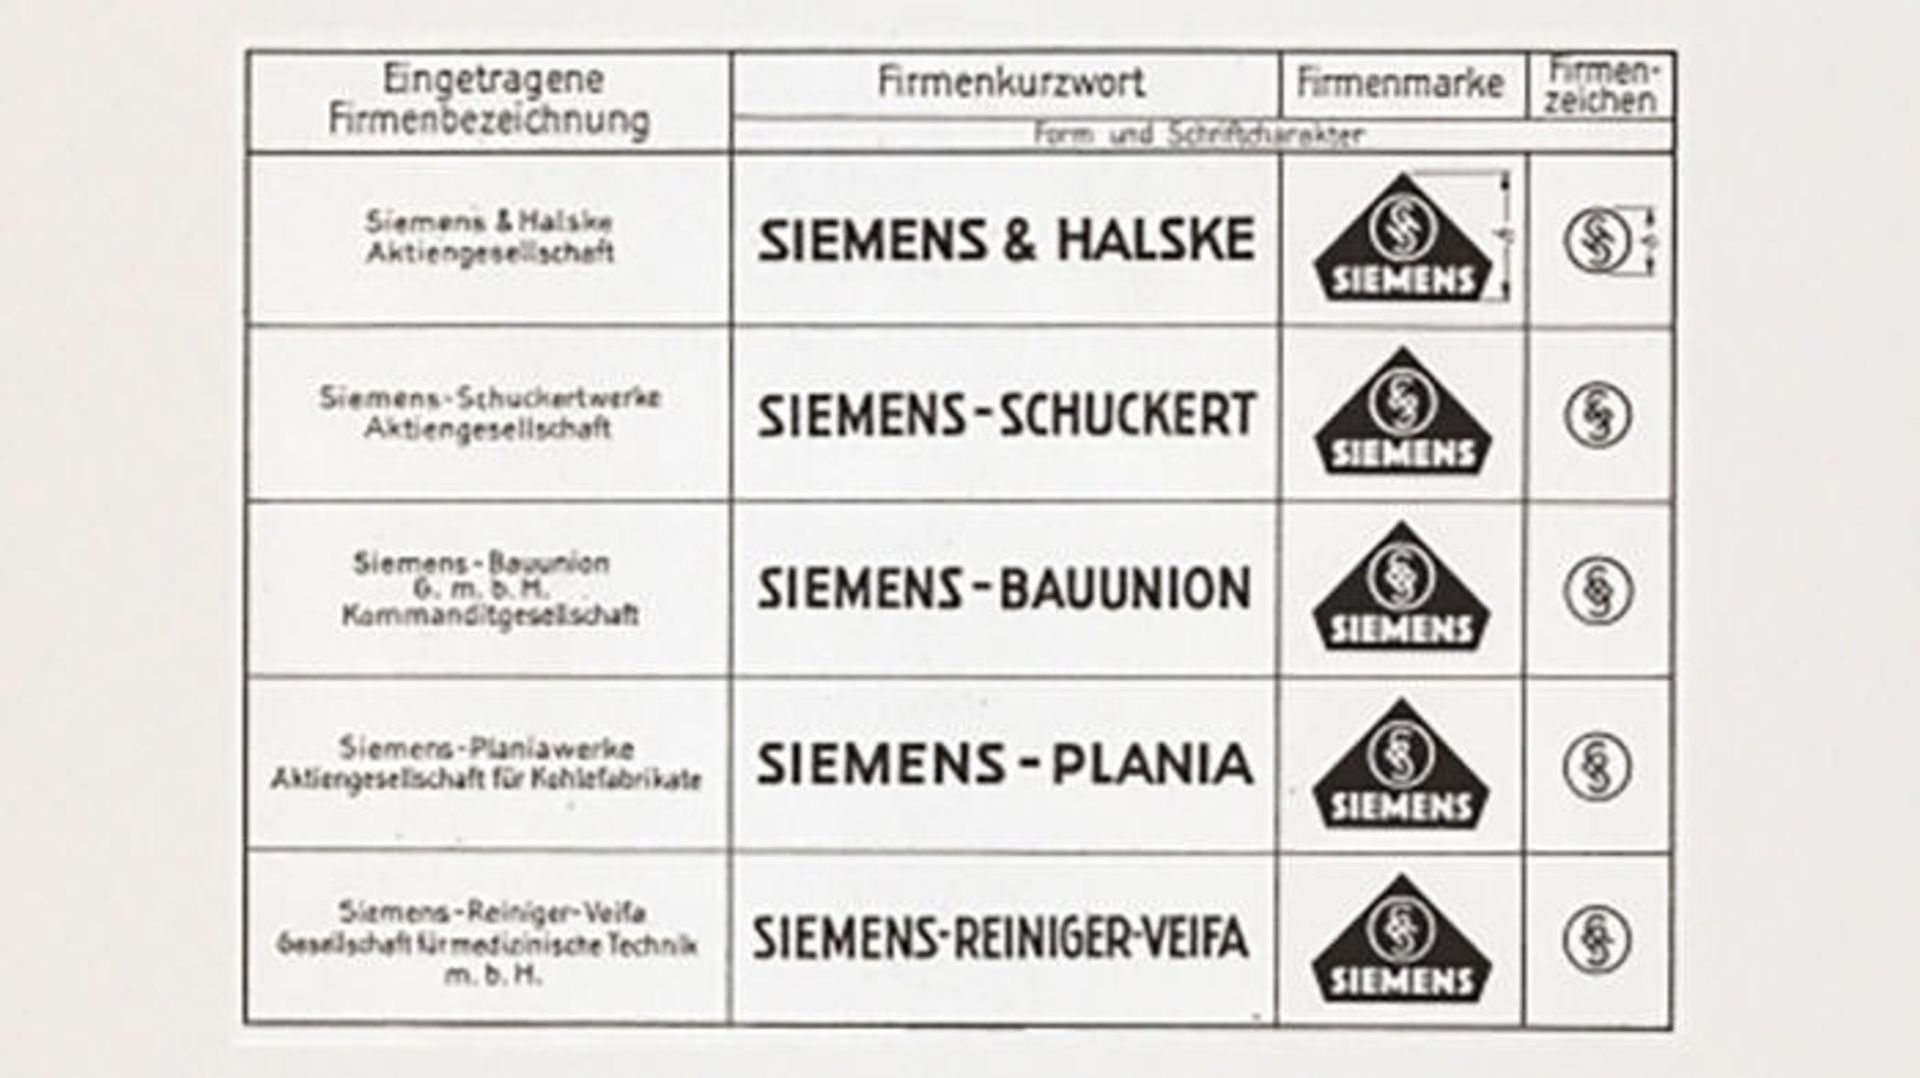 مرجع متخصصين ايران زيمنس / Siemens